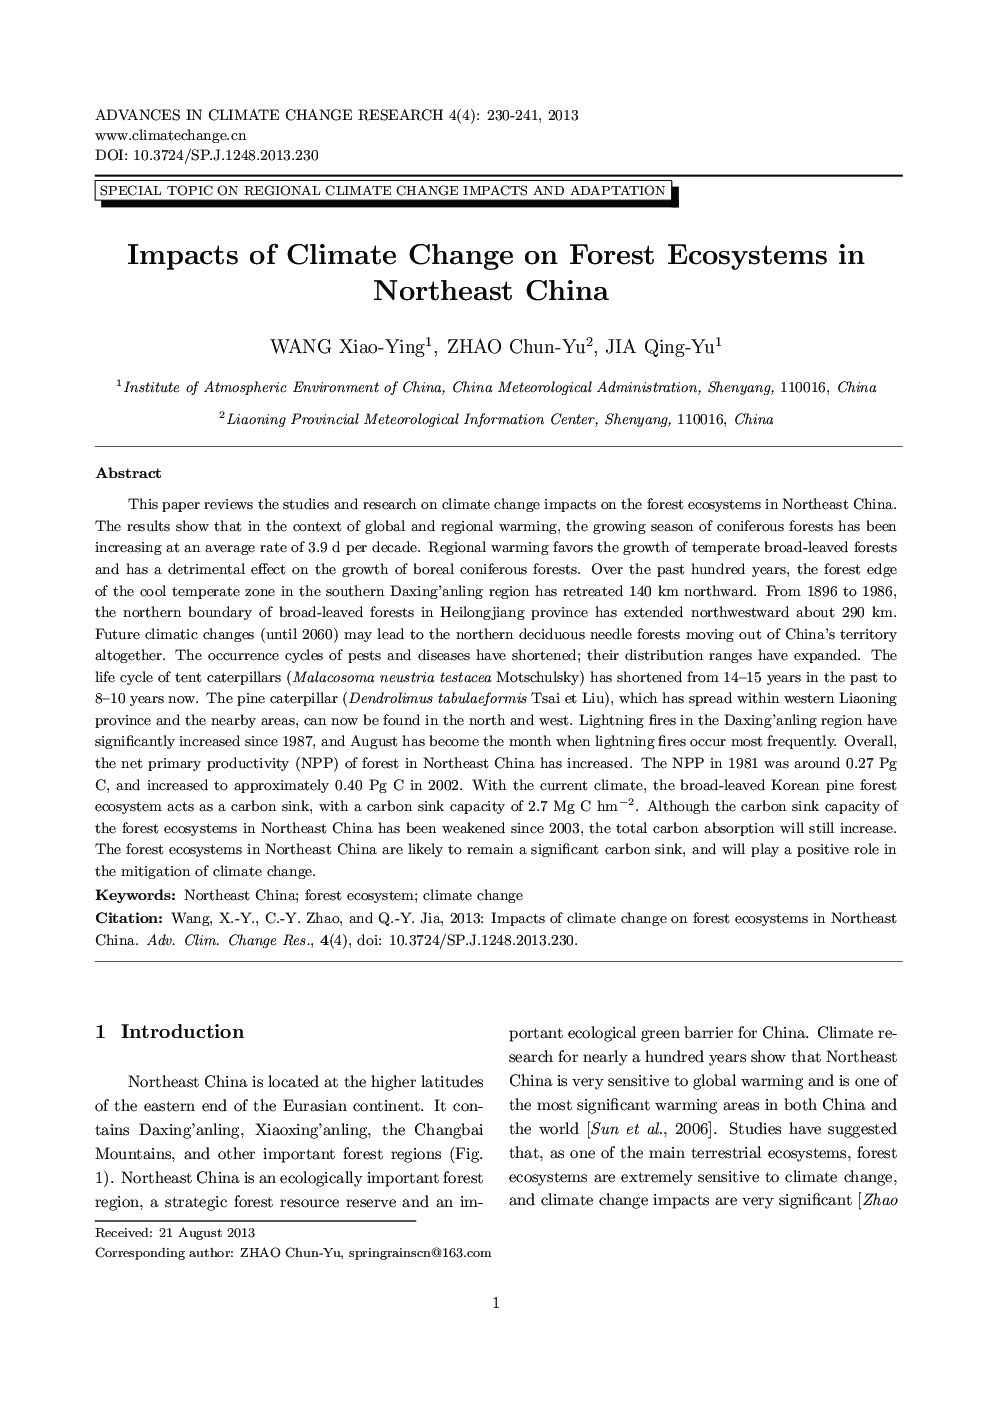 تاثیر تغییرات اقلیمی در اکوسیستم های جنگلی در شمال شرقی چین 